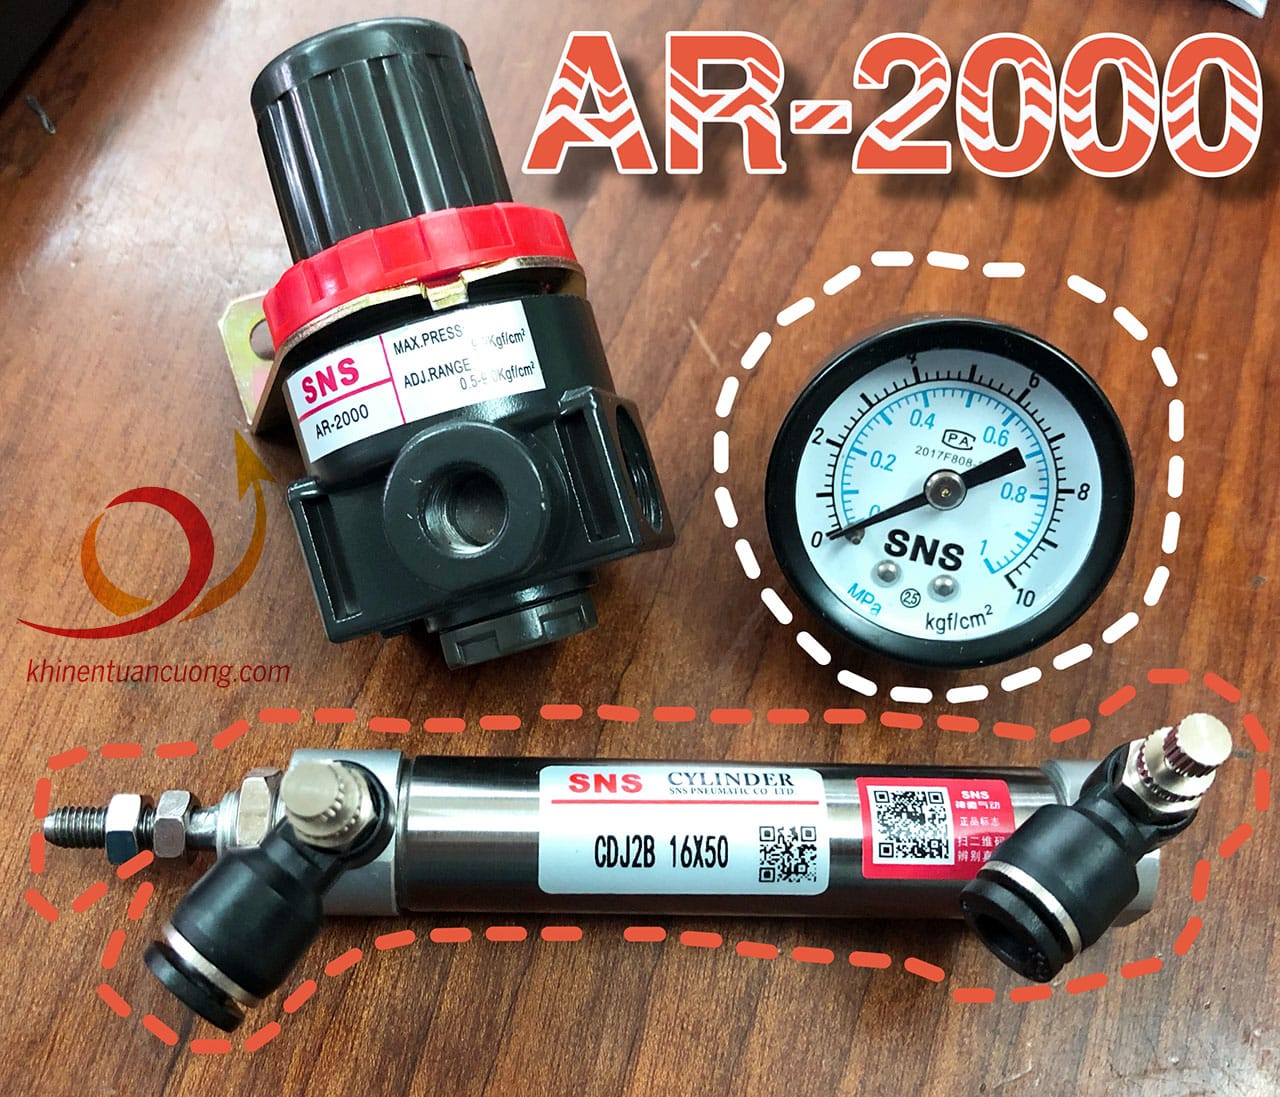 Khí nén trước khi đi vào CDJ2B 16x50 có thể được điều chỉnh thông qua van điều áp AR-2000 SNS